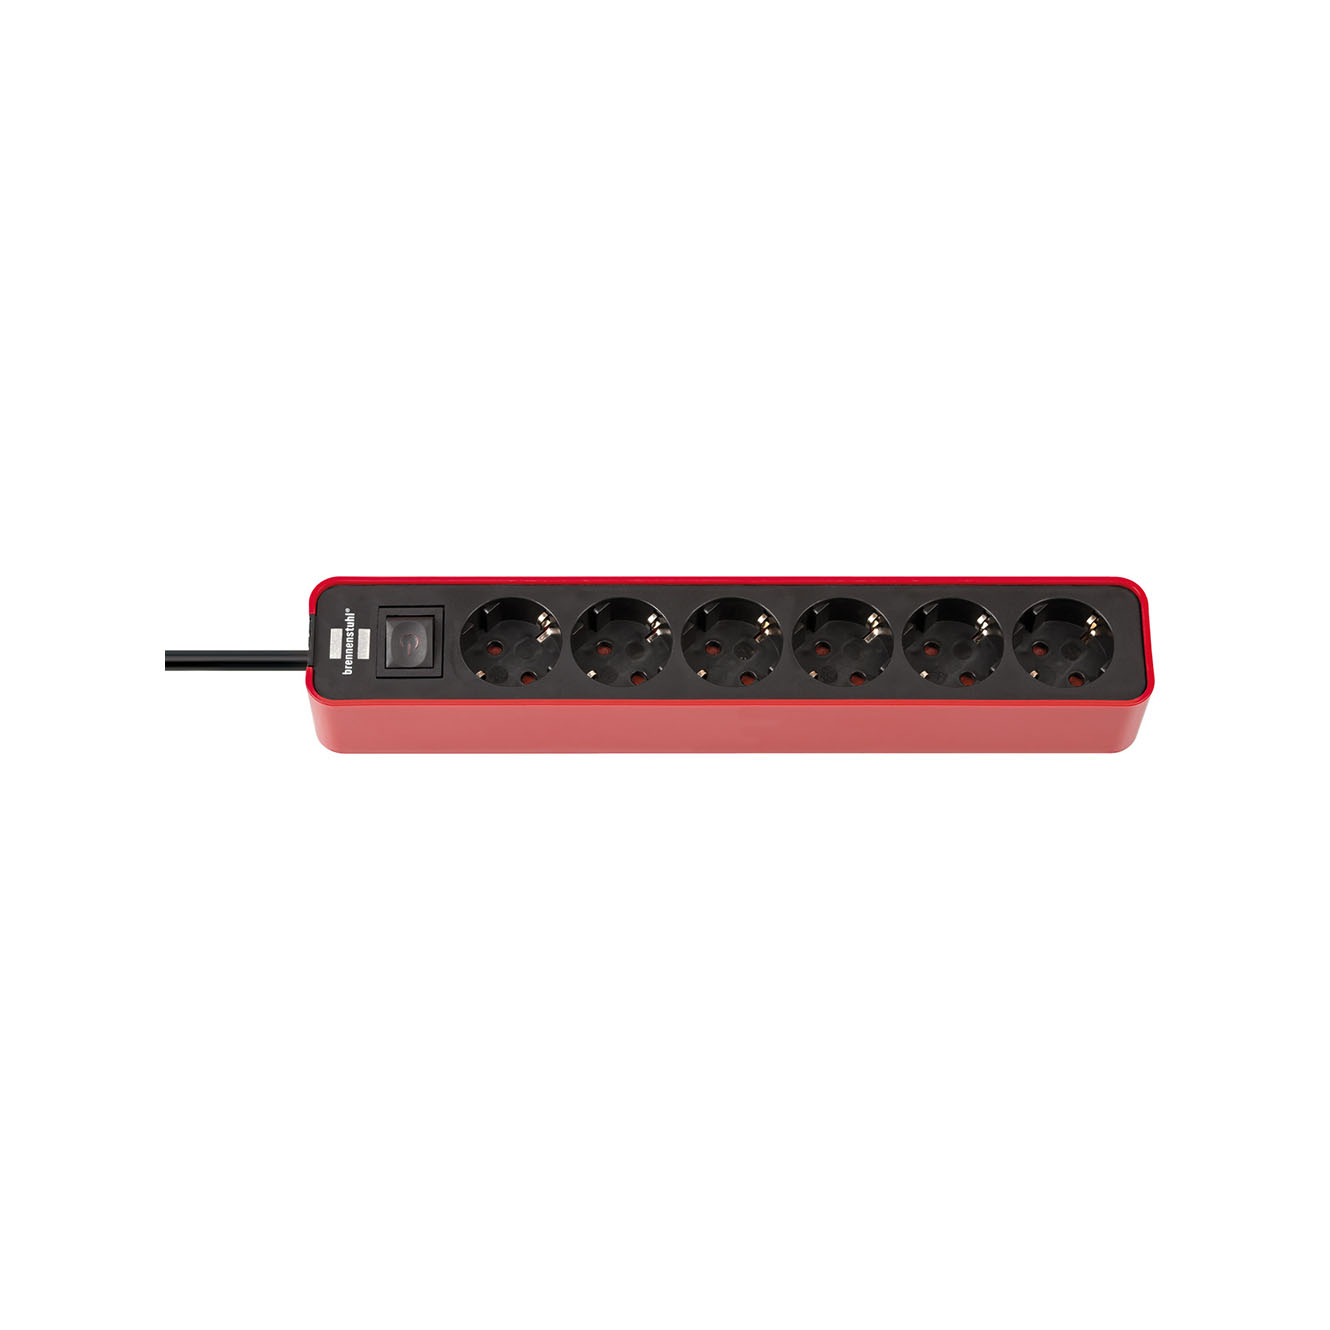 Удлинитель Brennenstuhl Ecolor с переключателем 6 розеток кабель 1,5 м H05VV-F 3G1,5 черно-красный 1153260070